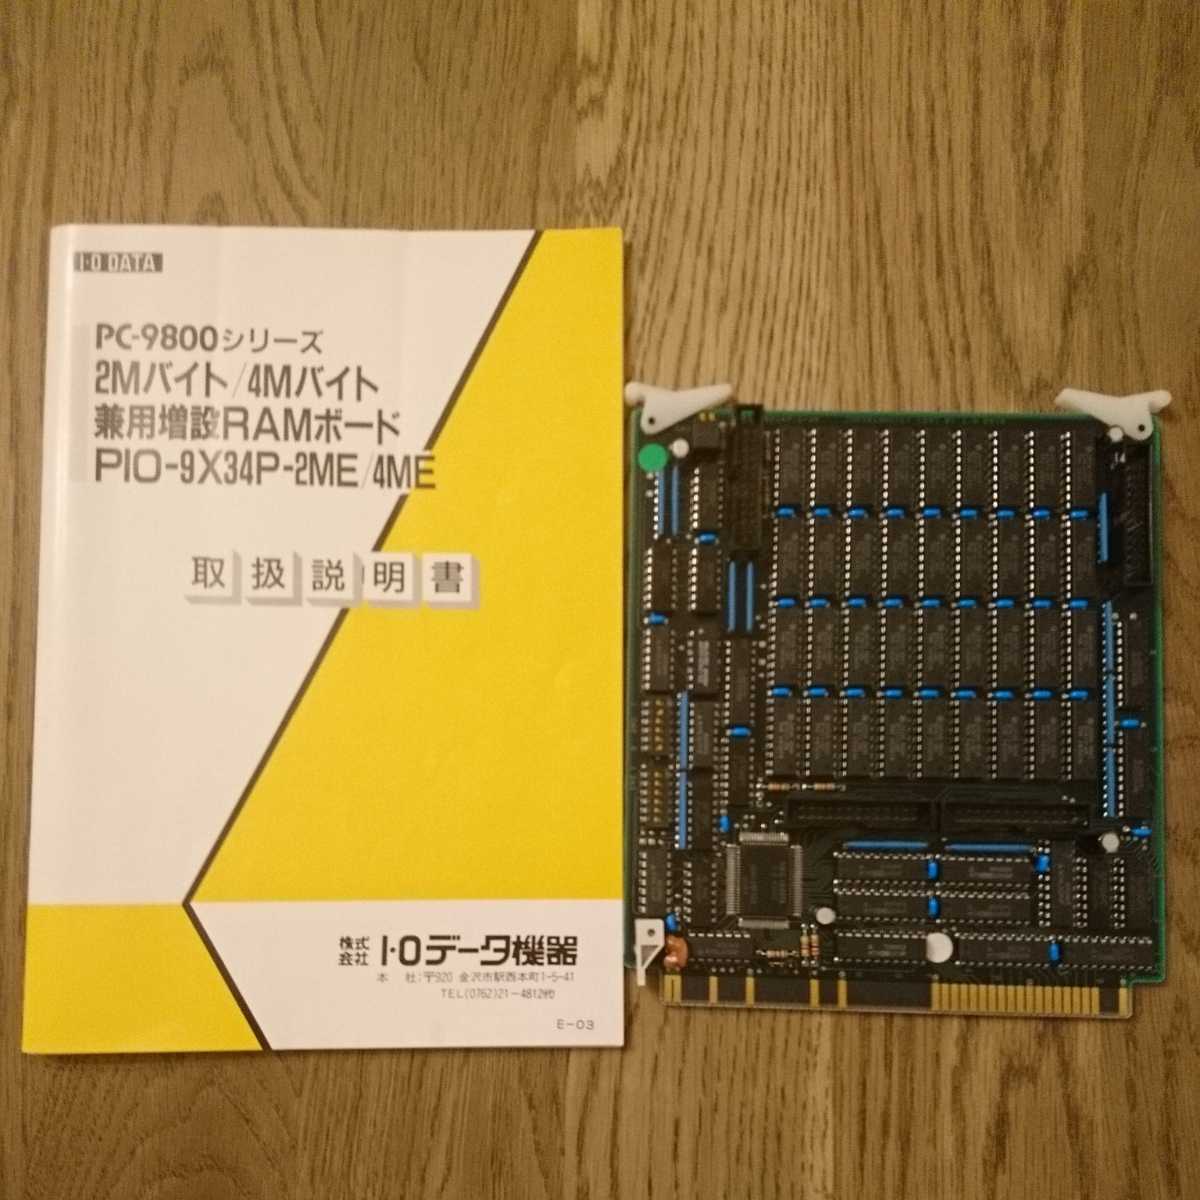 IODATA PIO-9X34P-2MB Cバス 増設RAMボード